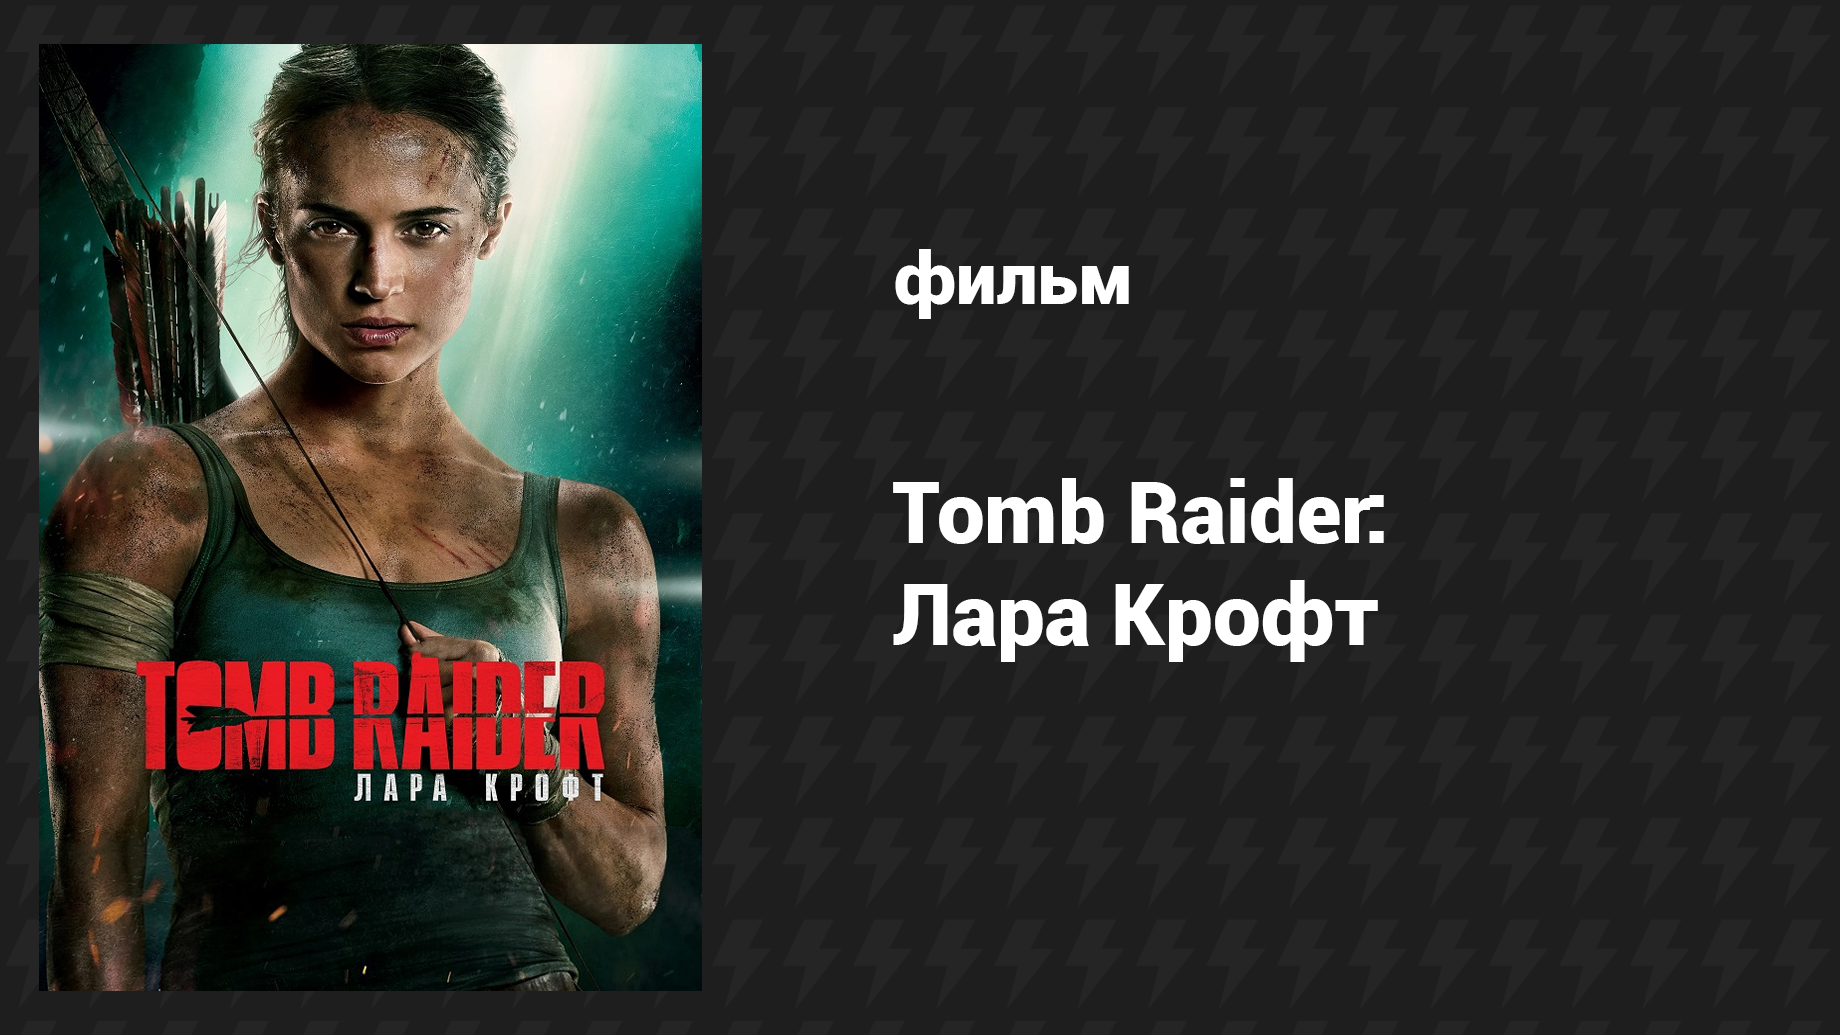 Tomb Raider: Лара Крофт (фильм, 2018)